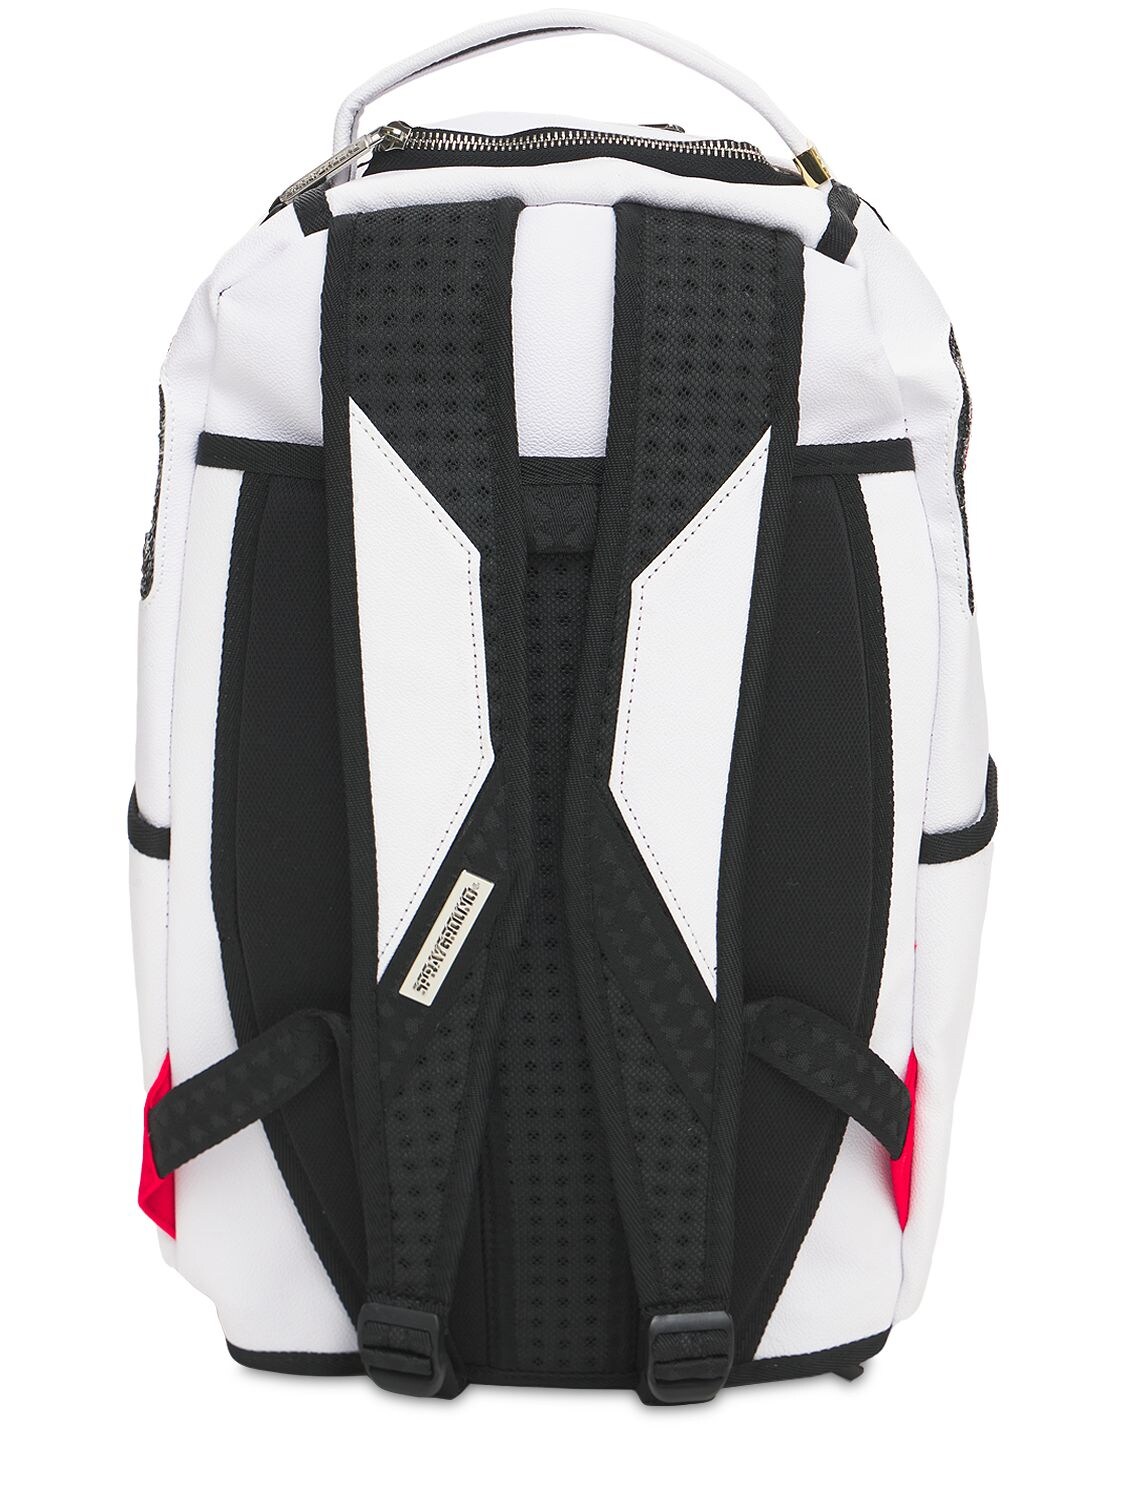 Sprayground Backpack SHARK CENTRAL 2.0 SPLIT BLACK WHITE BACKPACK White